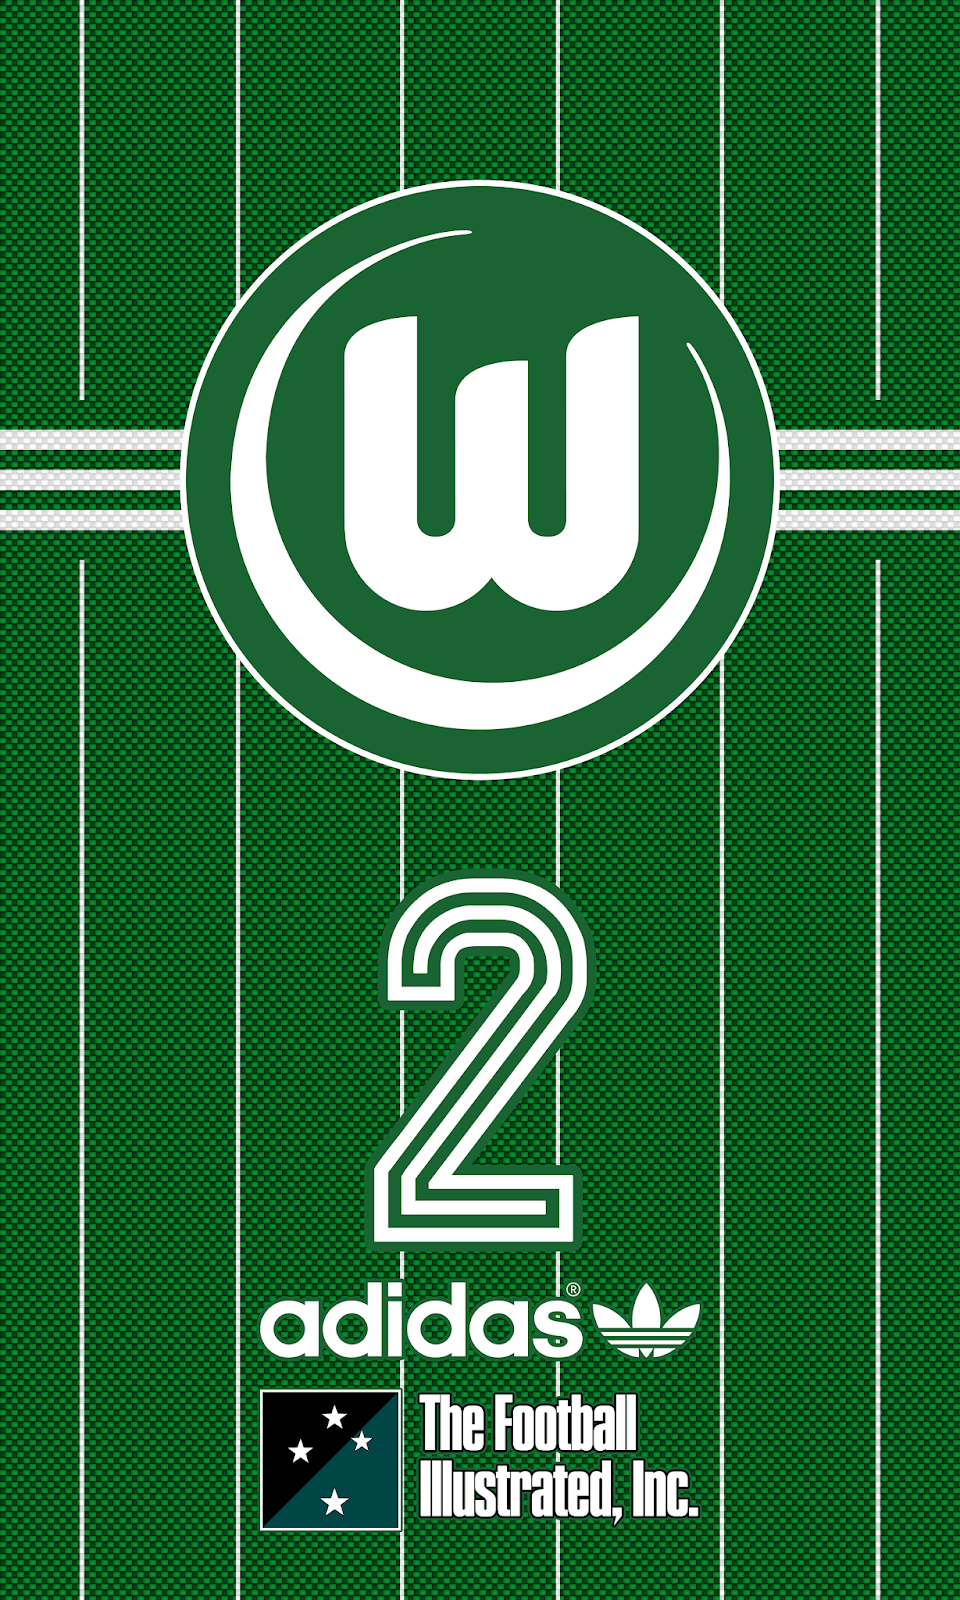 Wallpaper VfL Wolfsburg. L.W.s. Vfl wolfsburg